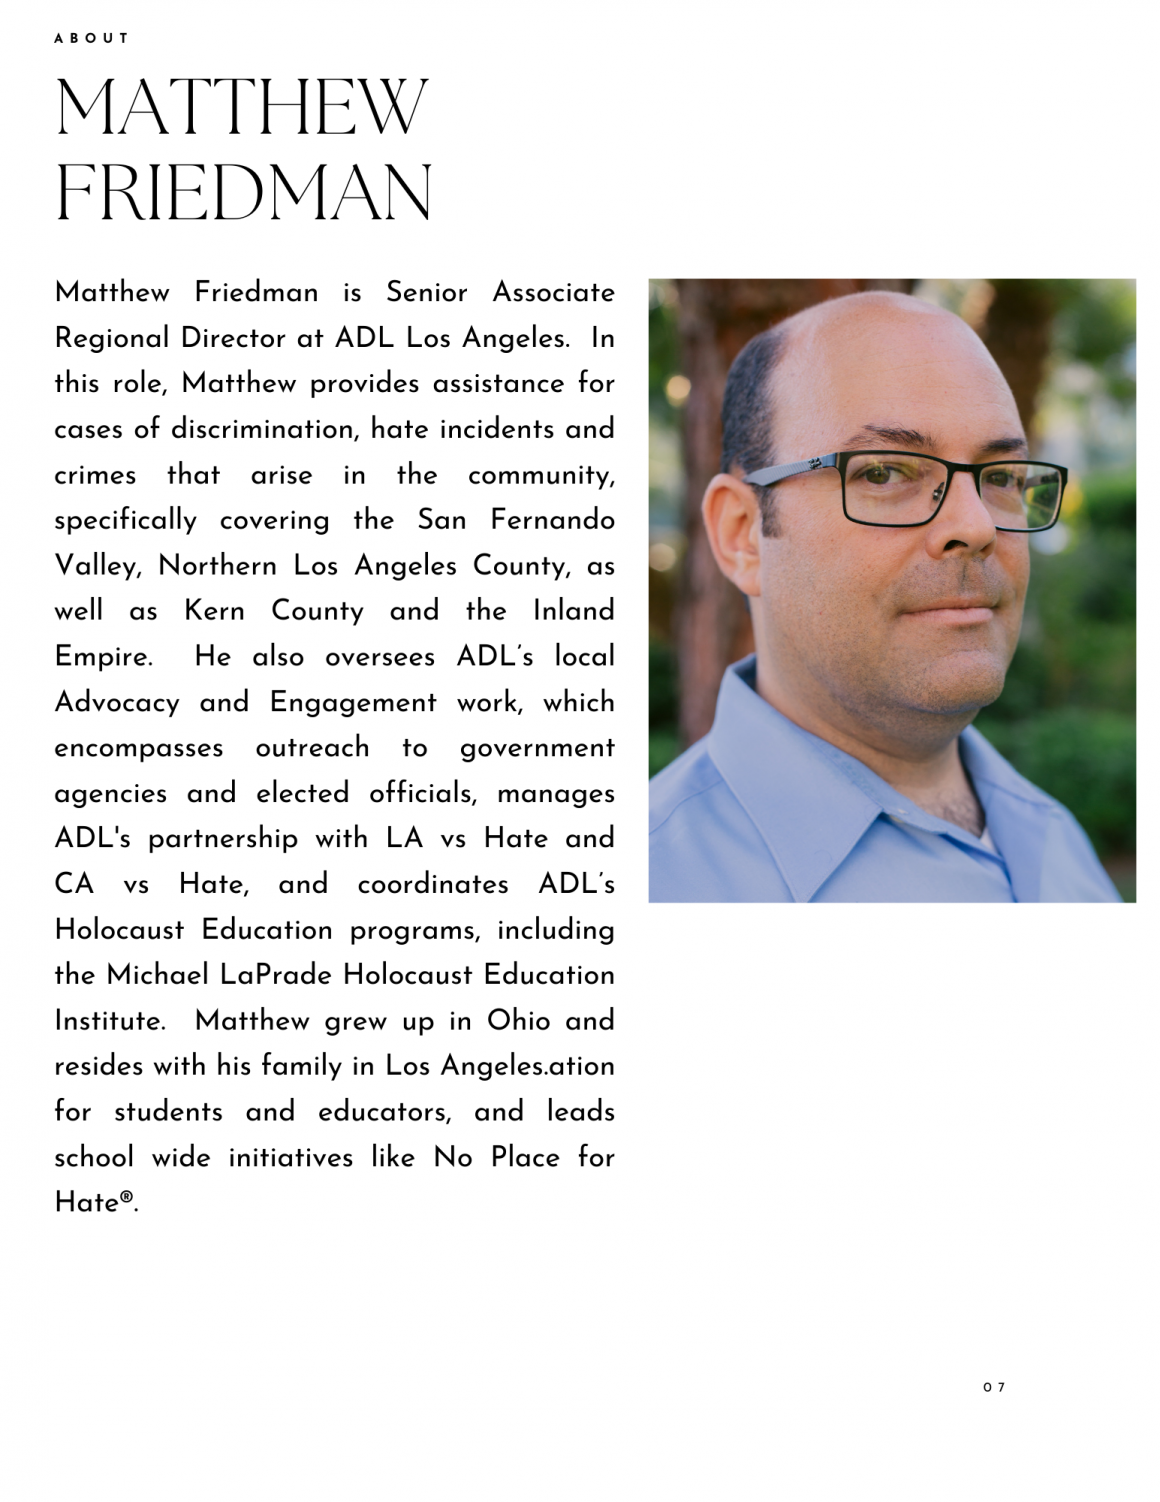 Matthew Friedman biography